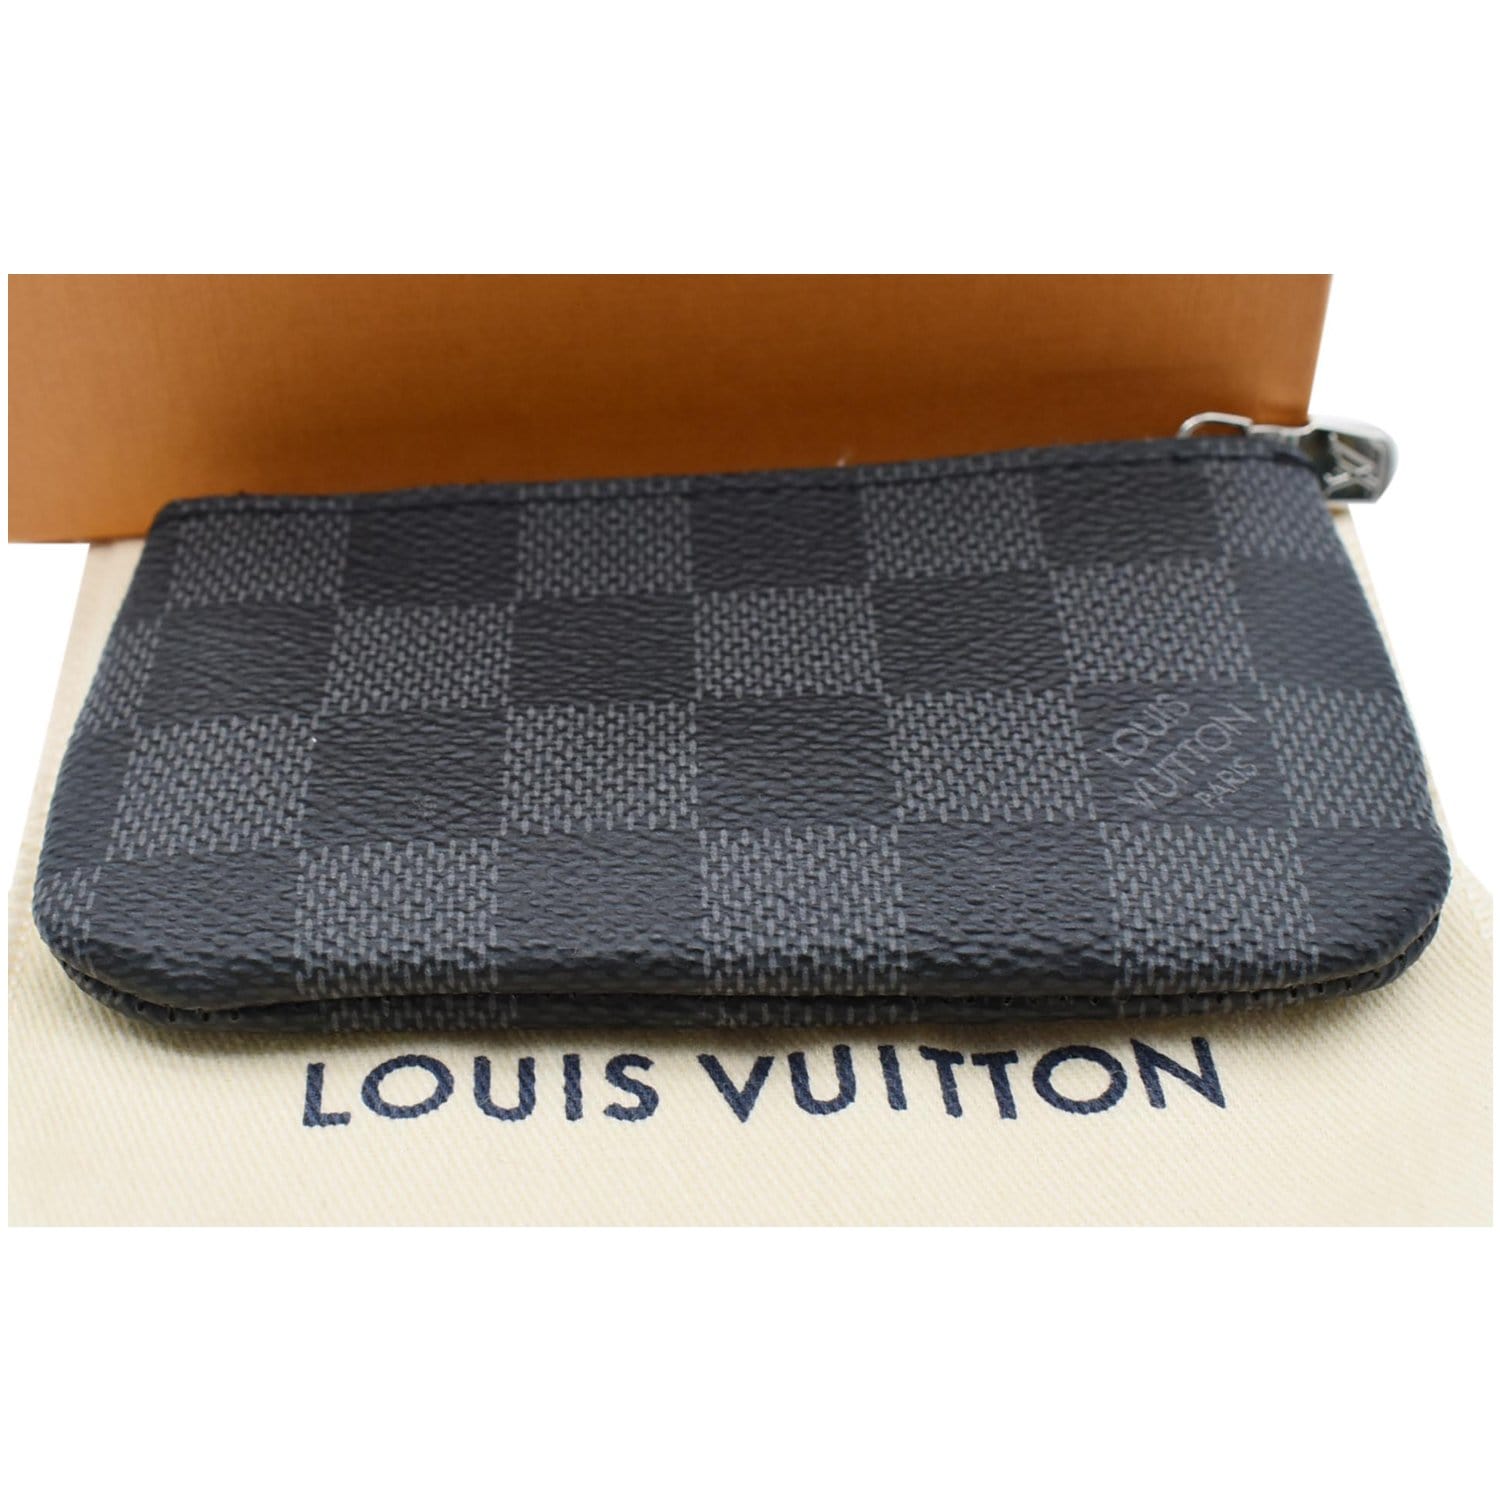 Louis Vuitton Pochette Cle Key Pouch Damier Graphite Black/GrayLouis Vuitton  Pochette Cle Key Pouch Damier Graphite Black/Gray - OFour